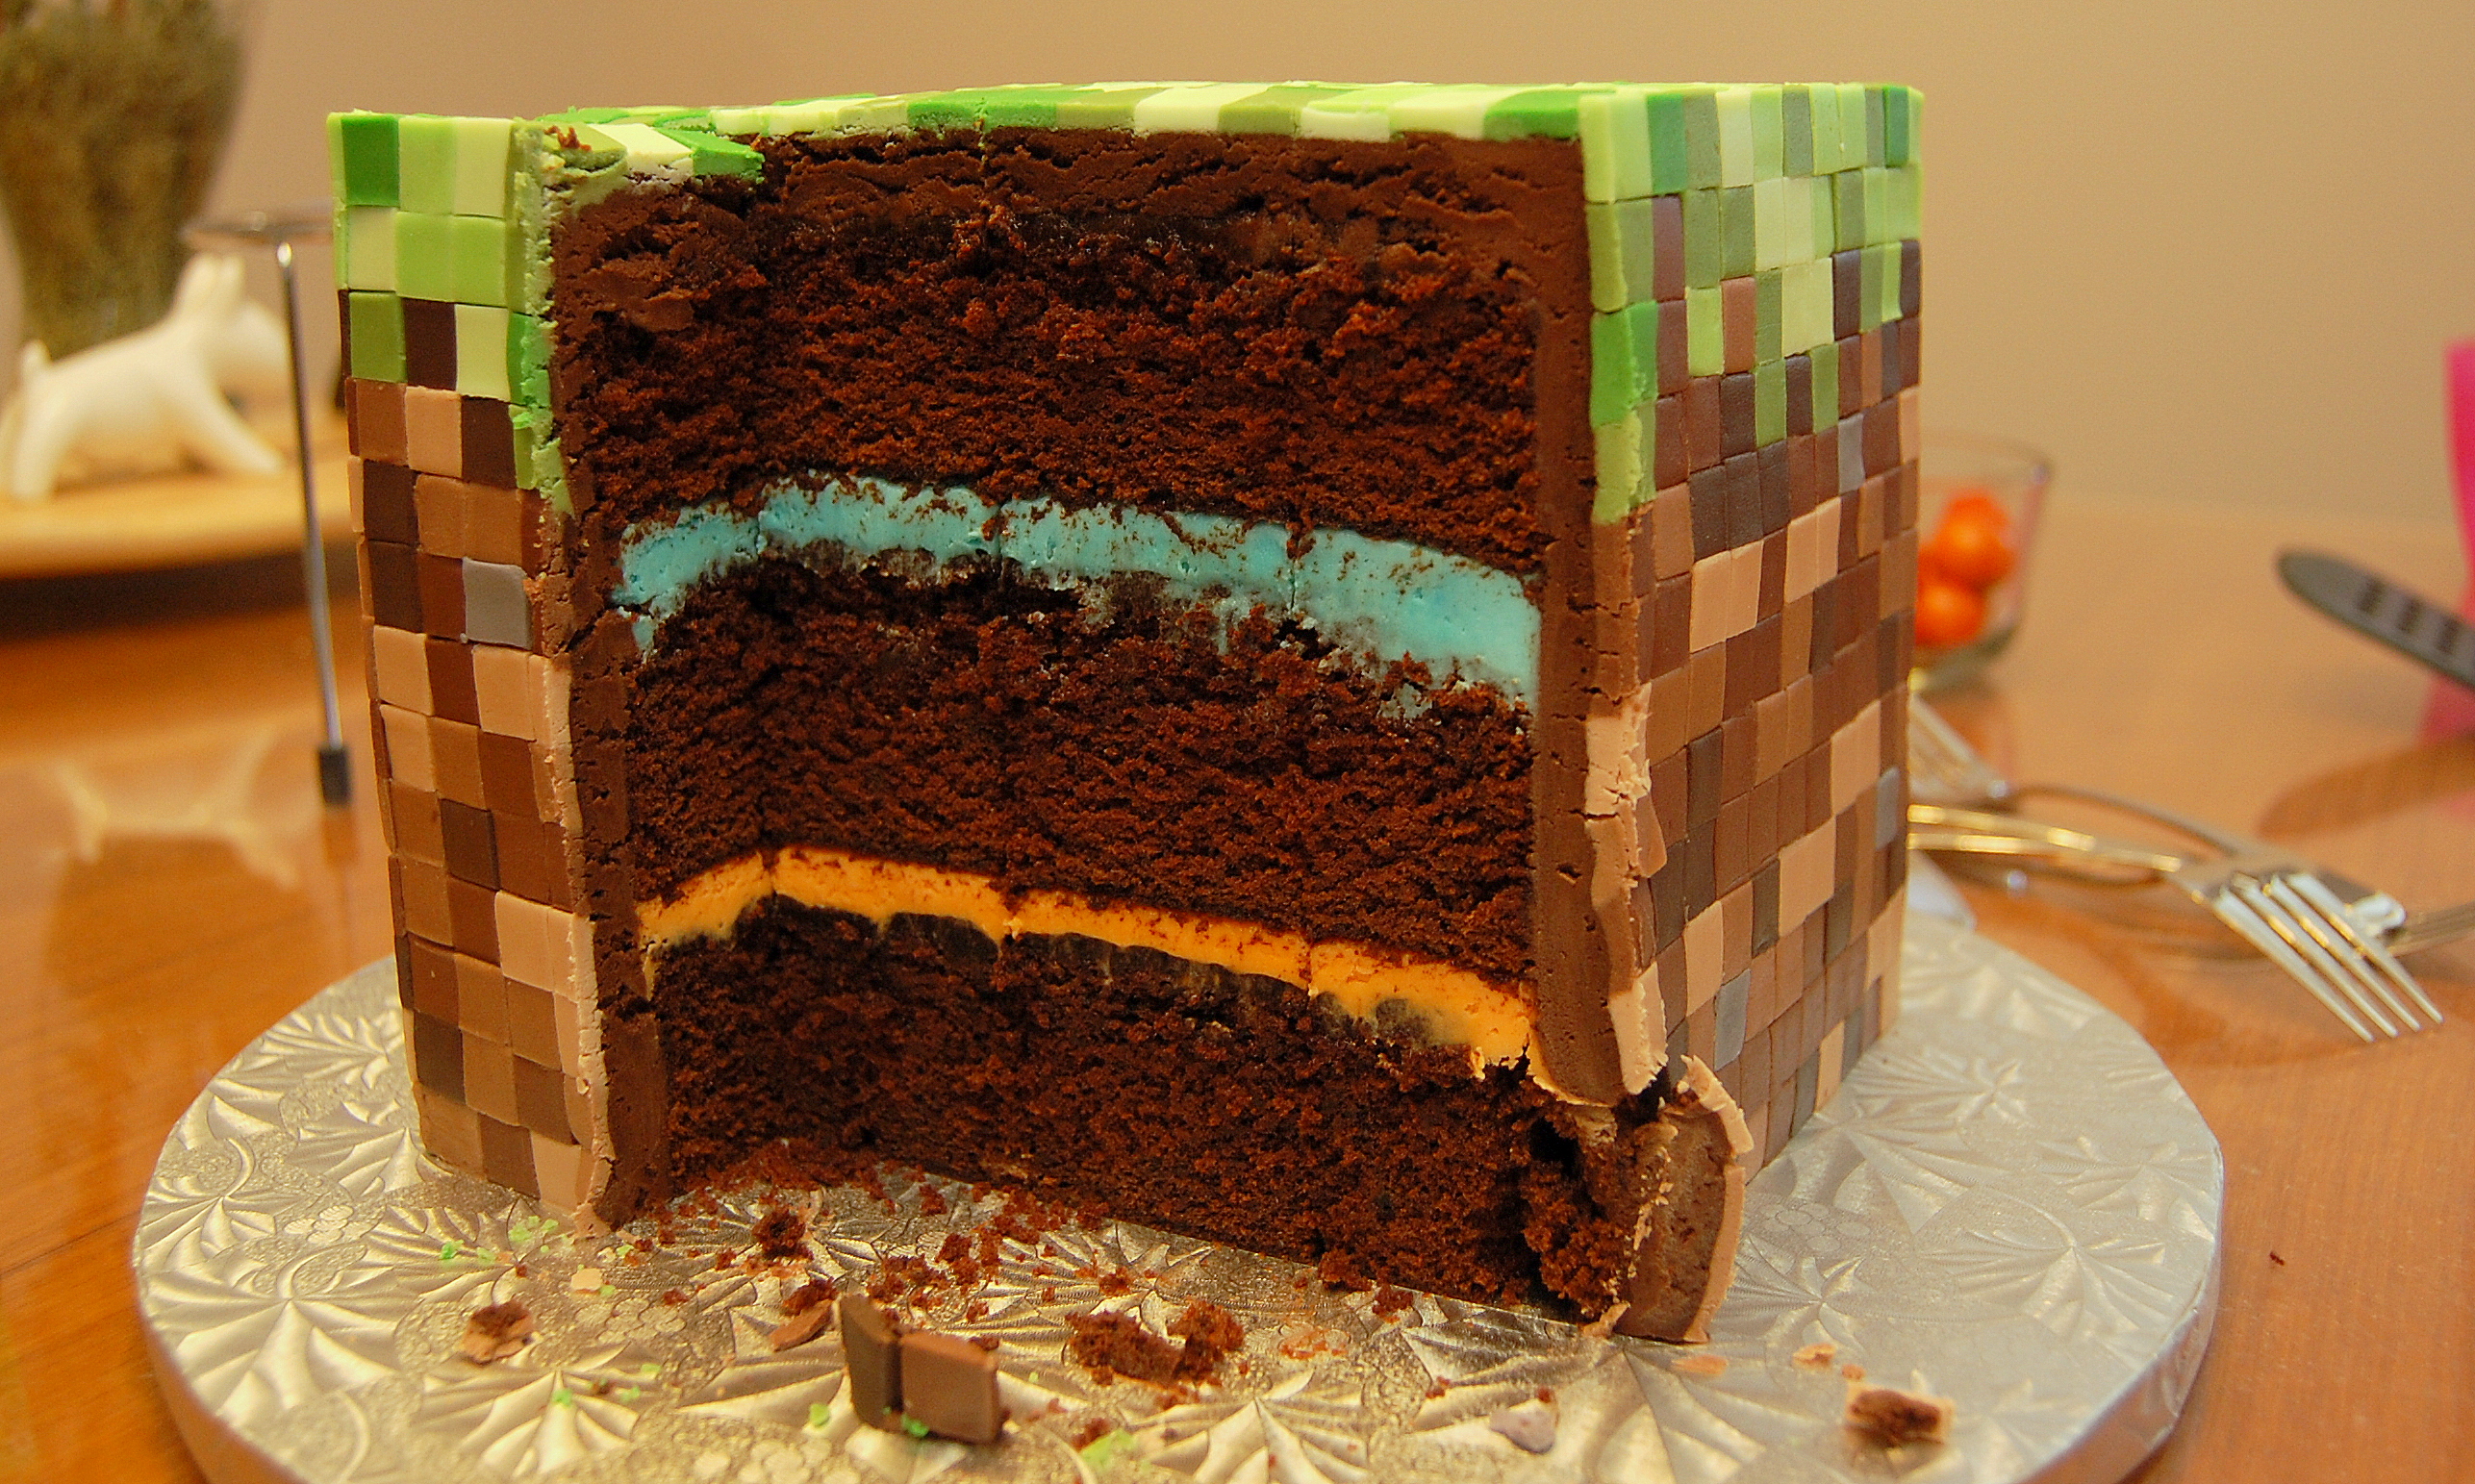 Comunidade de Minecraft 23 abr Curiosidades do minecraft 450: - O bolo foi  adicionado em resposta ao